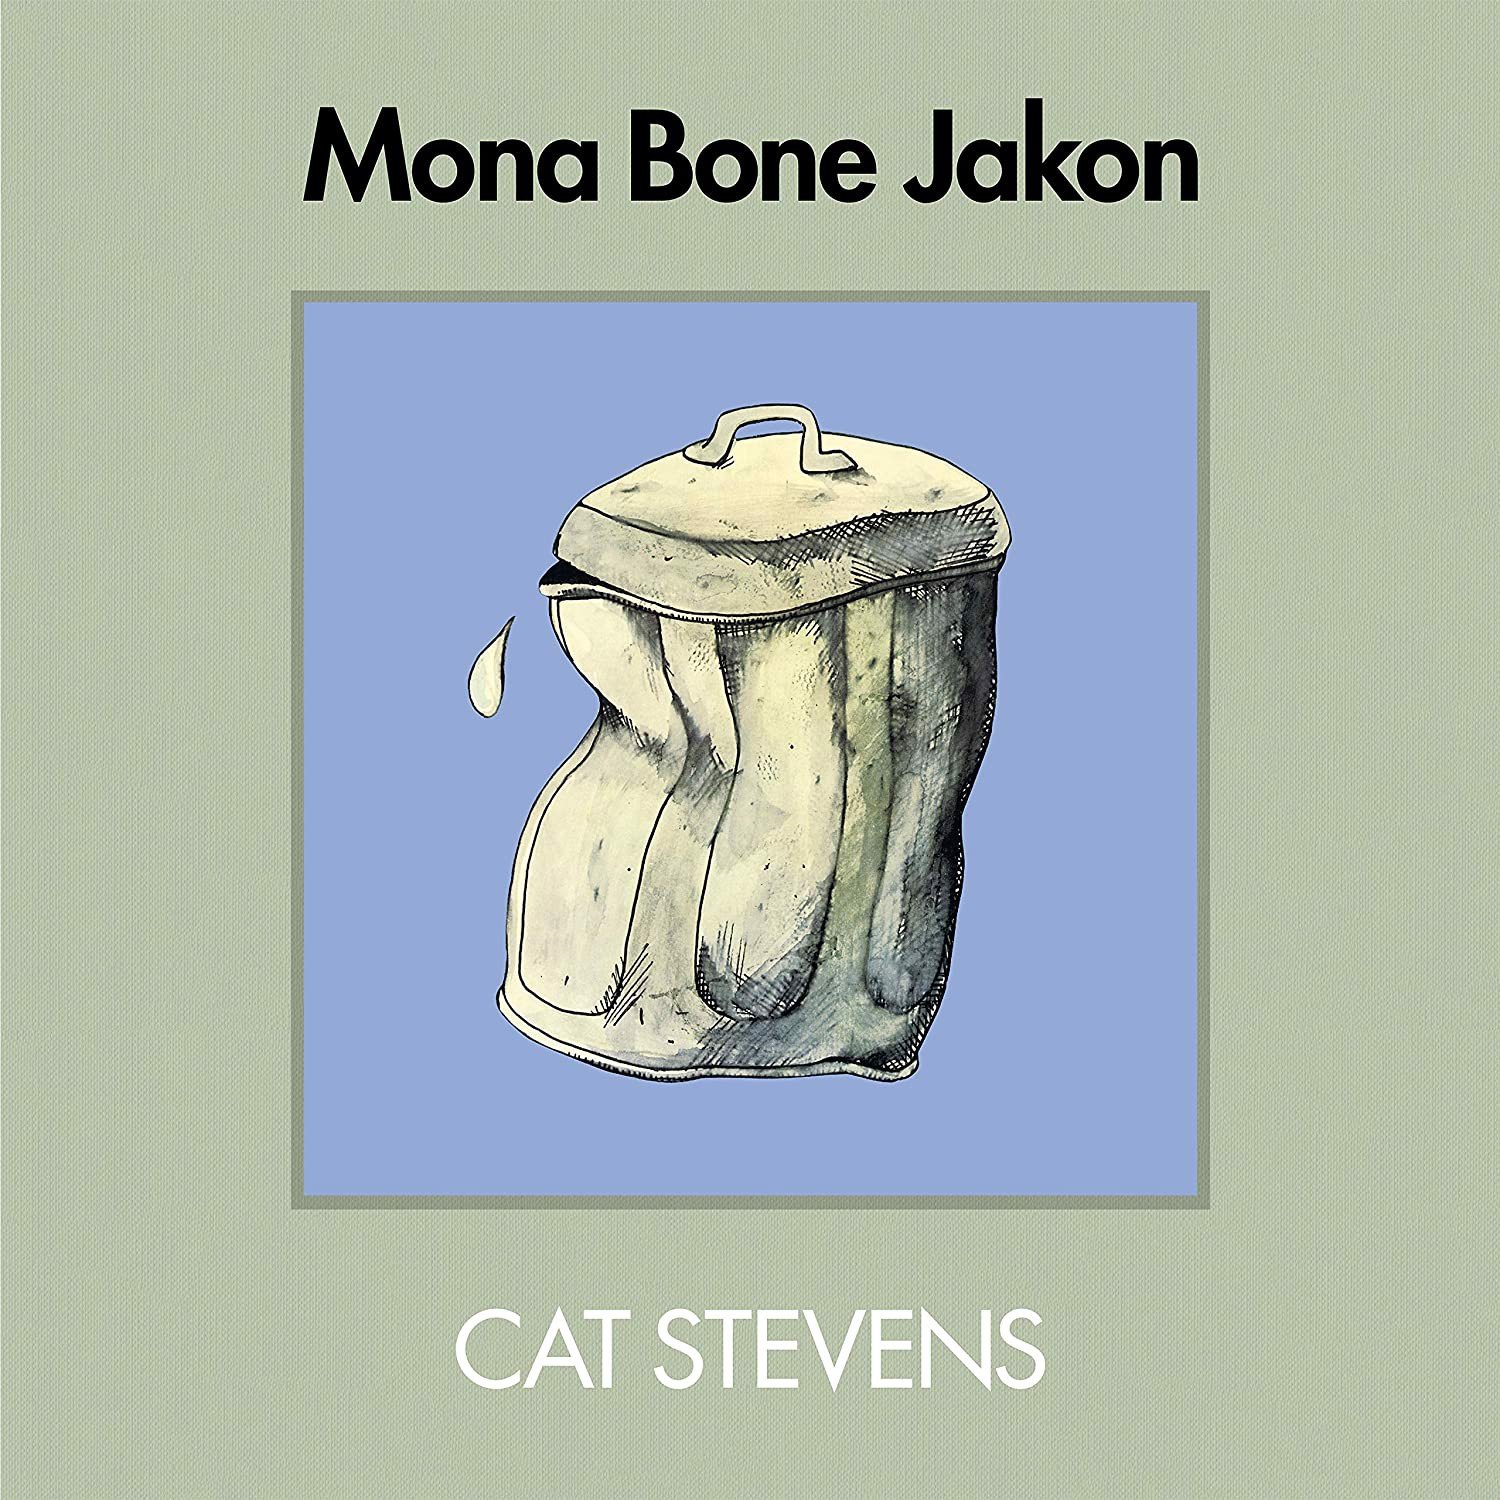 cat stevens mona bone jakon spotify